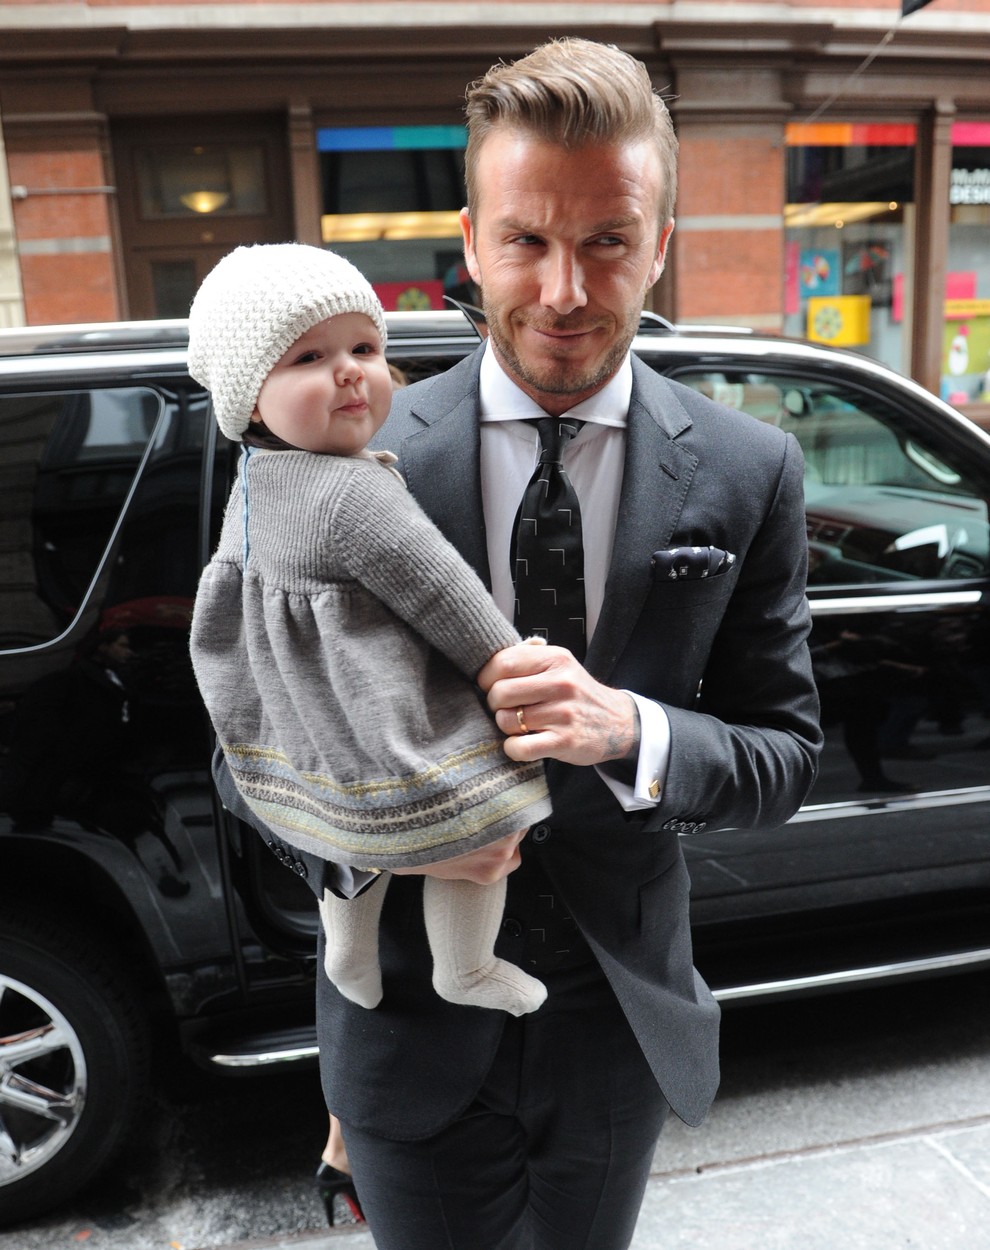 Ilyen nagylány lett Harper Seven Beckham - cuki képek vasárnapra